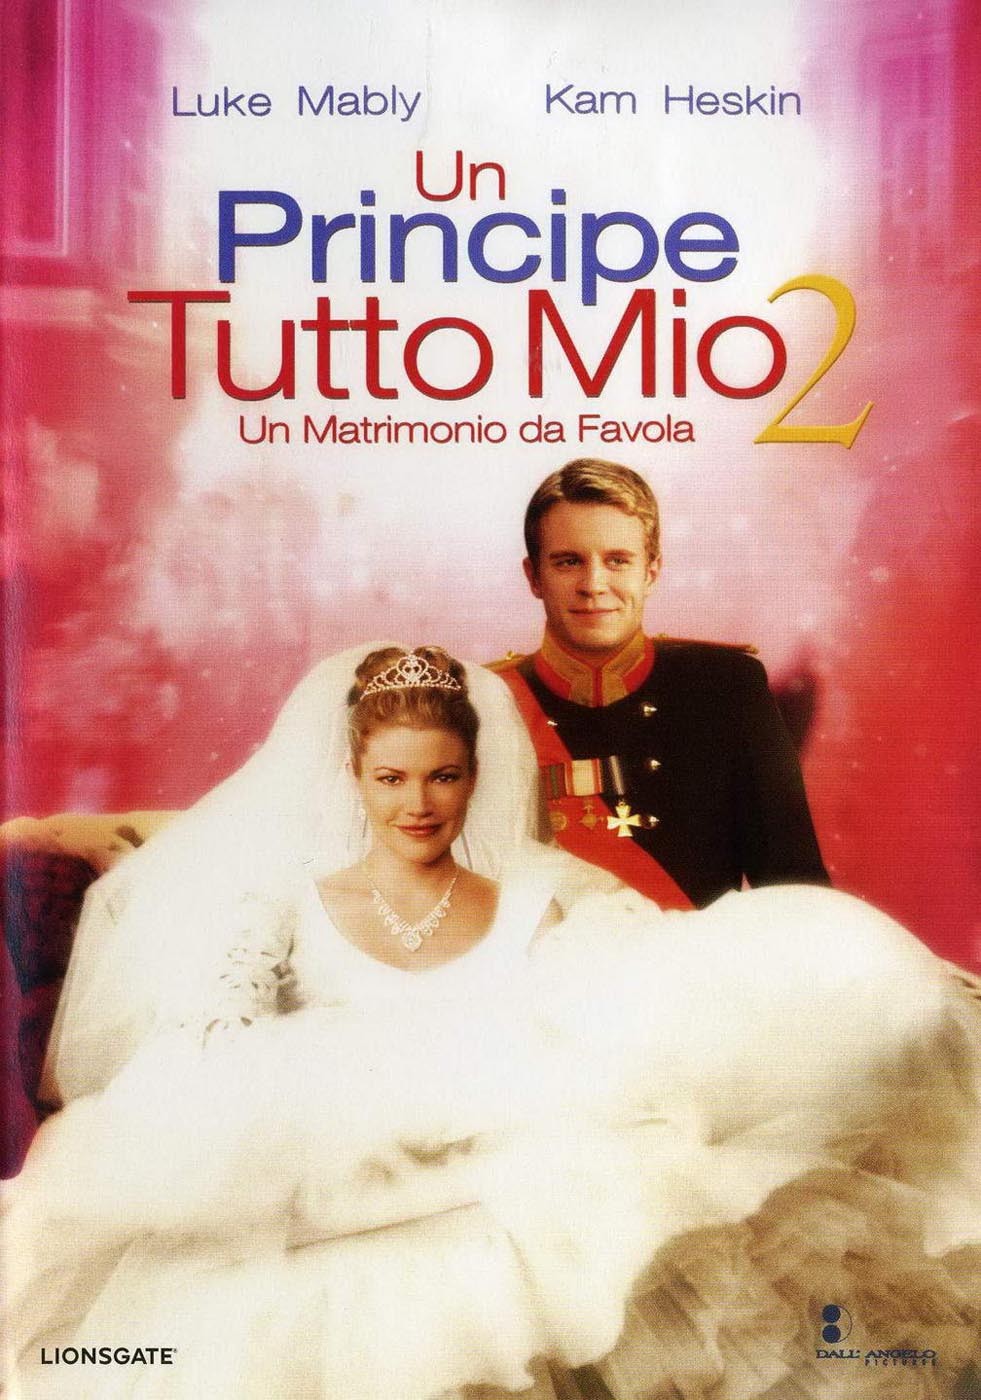 Принц и я: Королевская свадьба / The Prince & Me II: The Royal Wedding (2006) отзывы. Рецензии. Новости кино. Актеры фильма Принц и я: Королевская свадьба. Отзывы о фильме Принц и я: Королевская свадьба